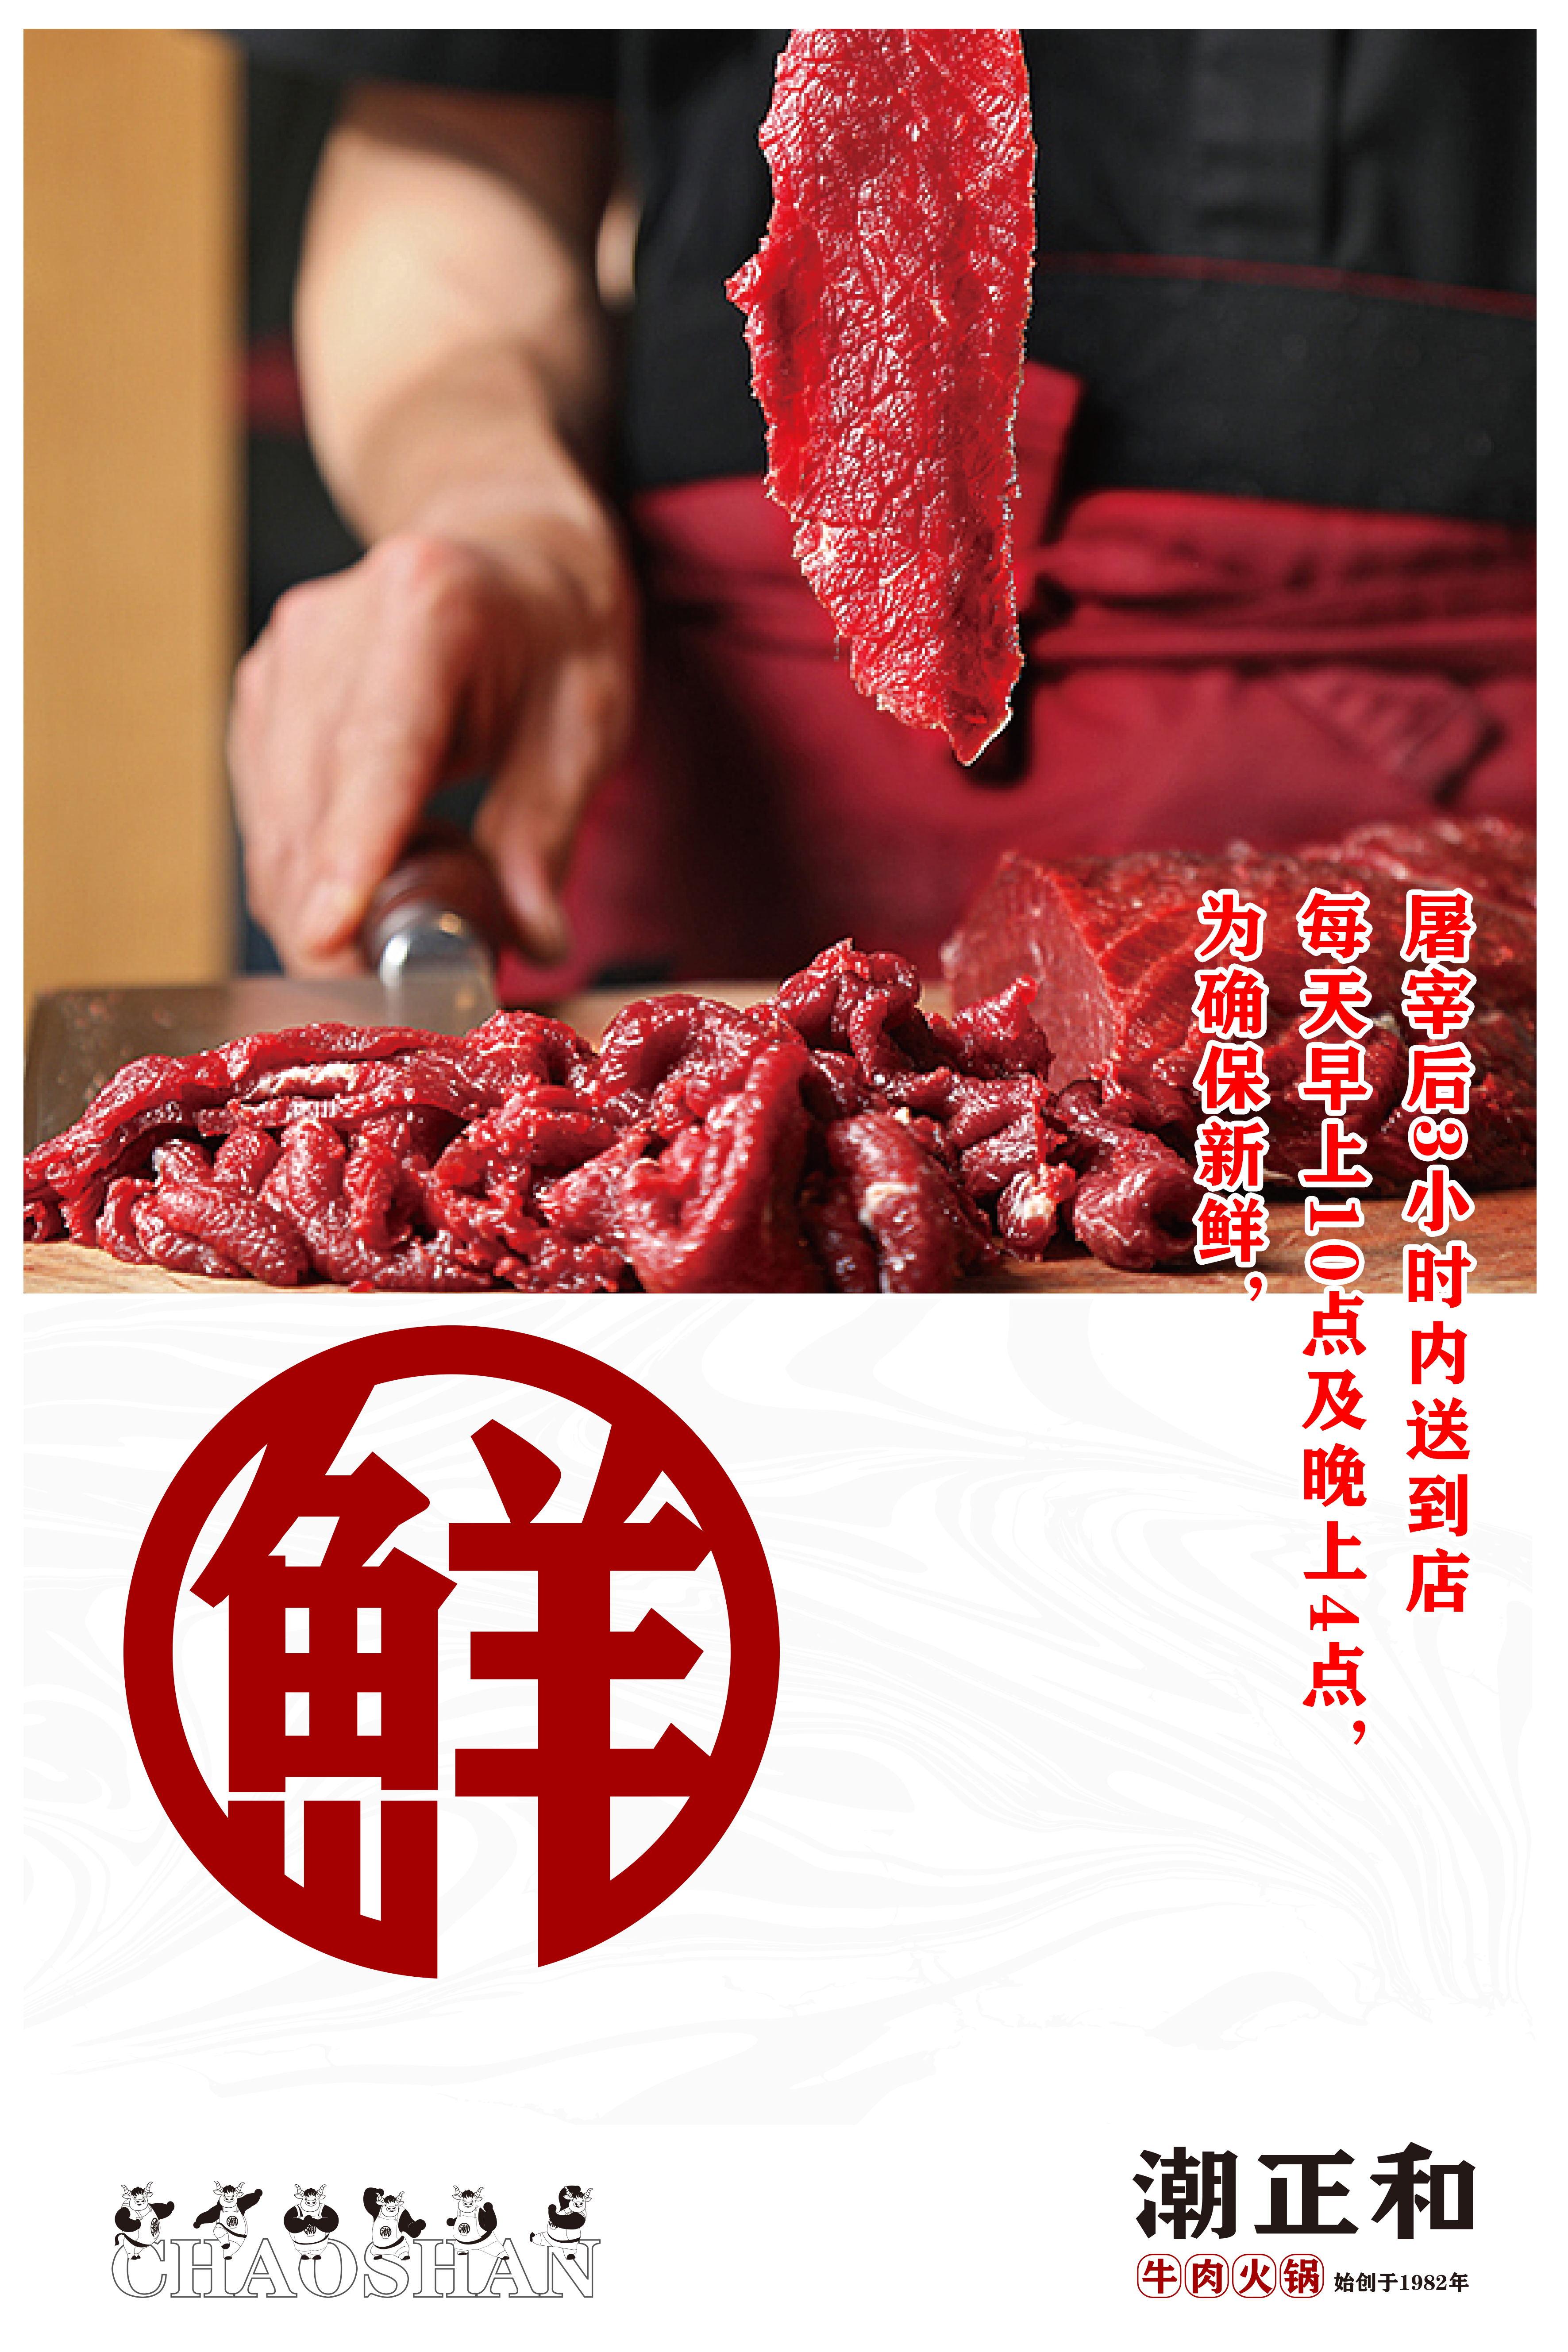 龙锦记潮汕牛肉火锅餐厅设计